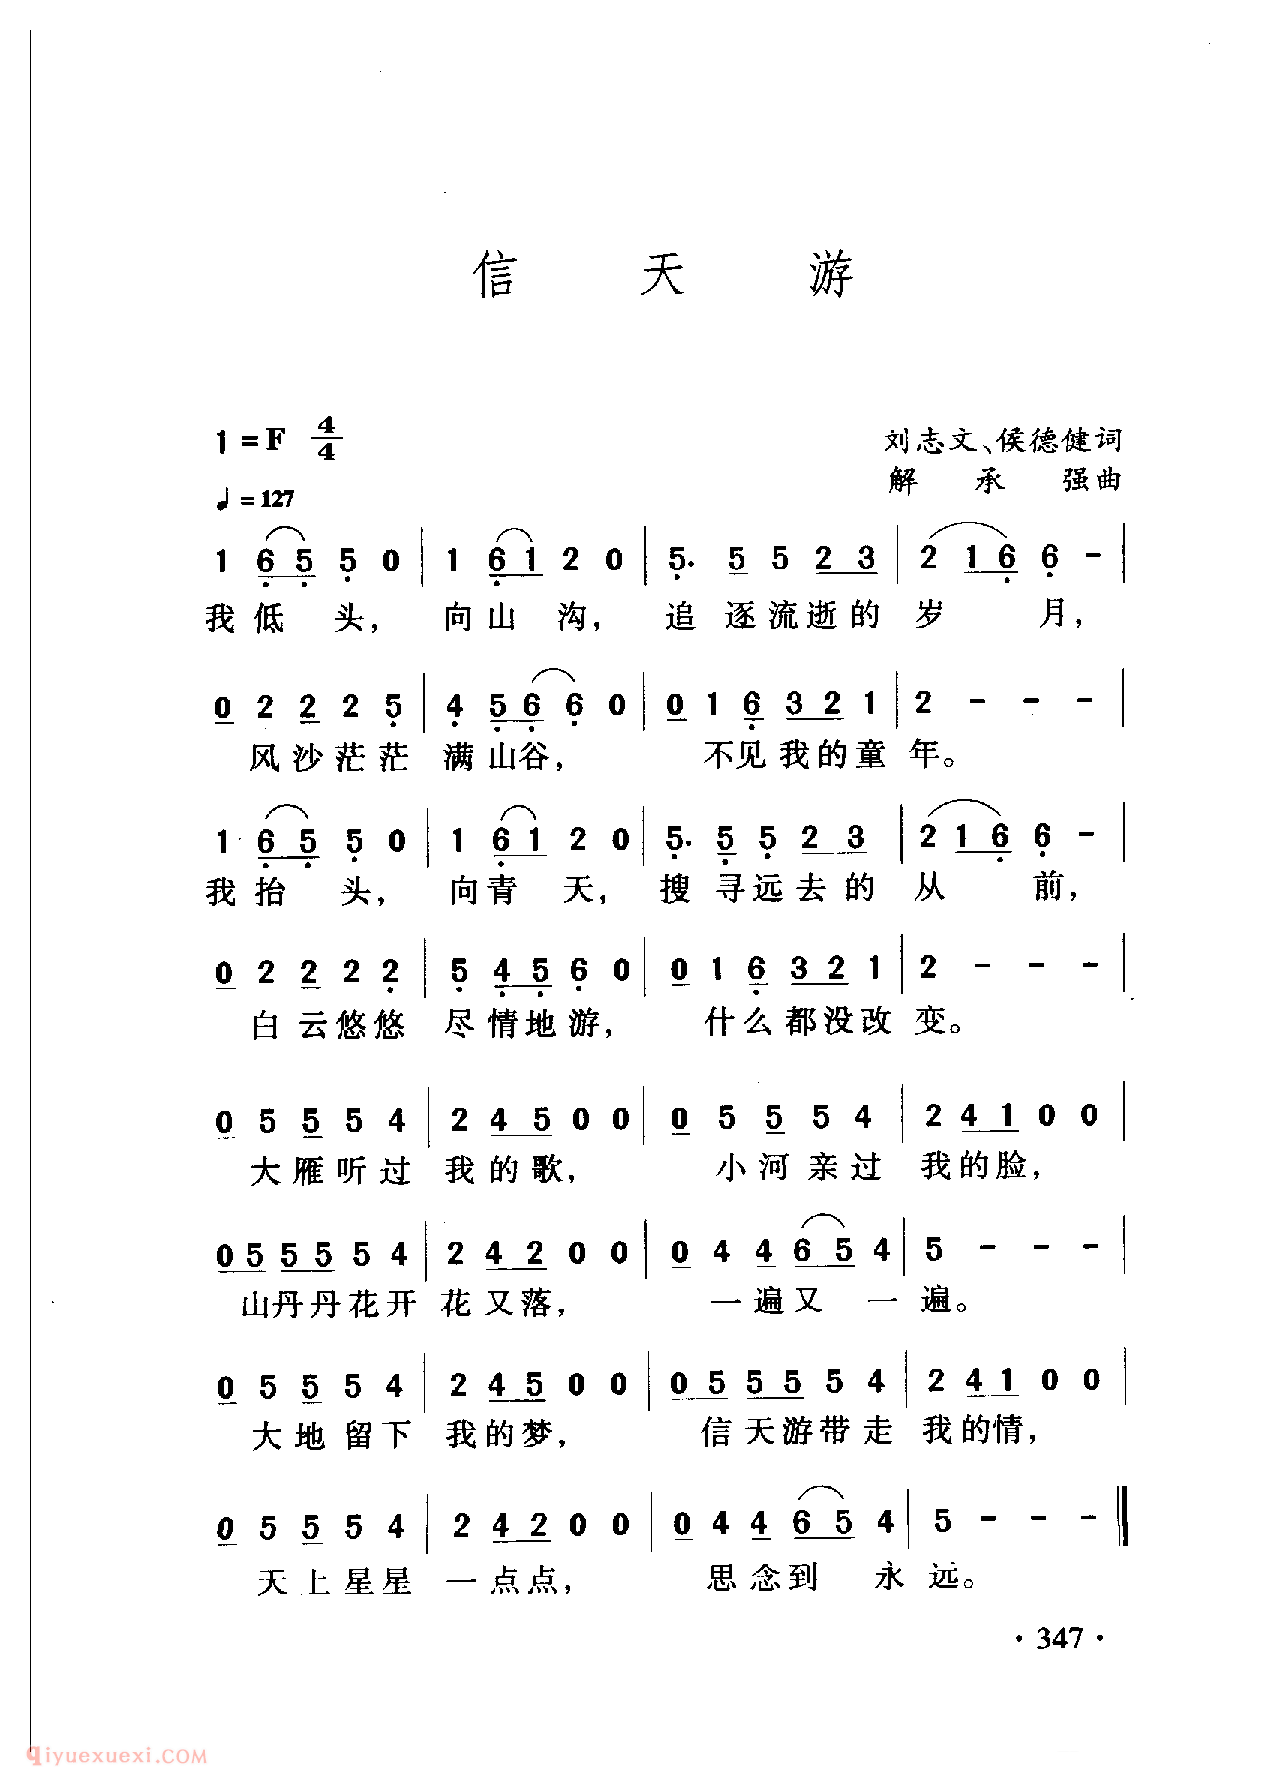 中国名歌[信天游]乐谱